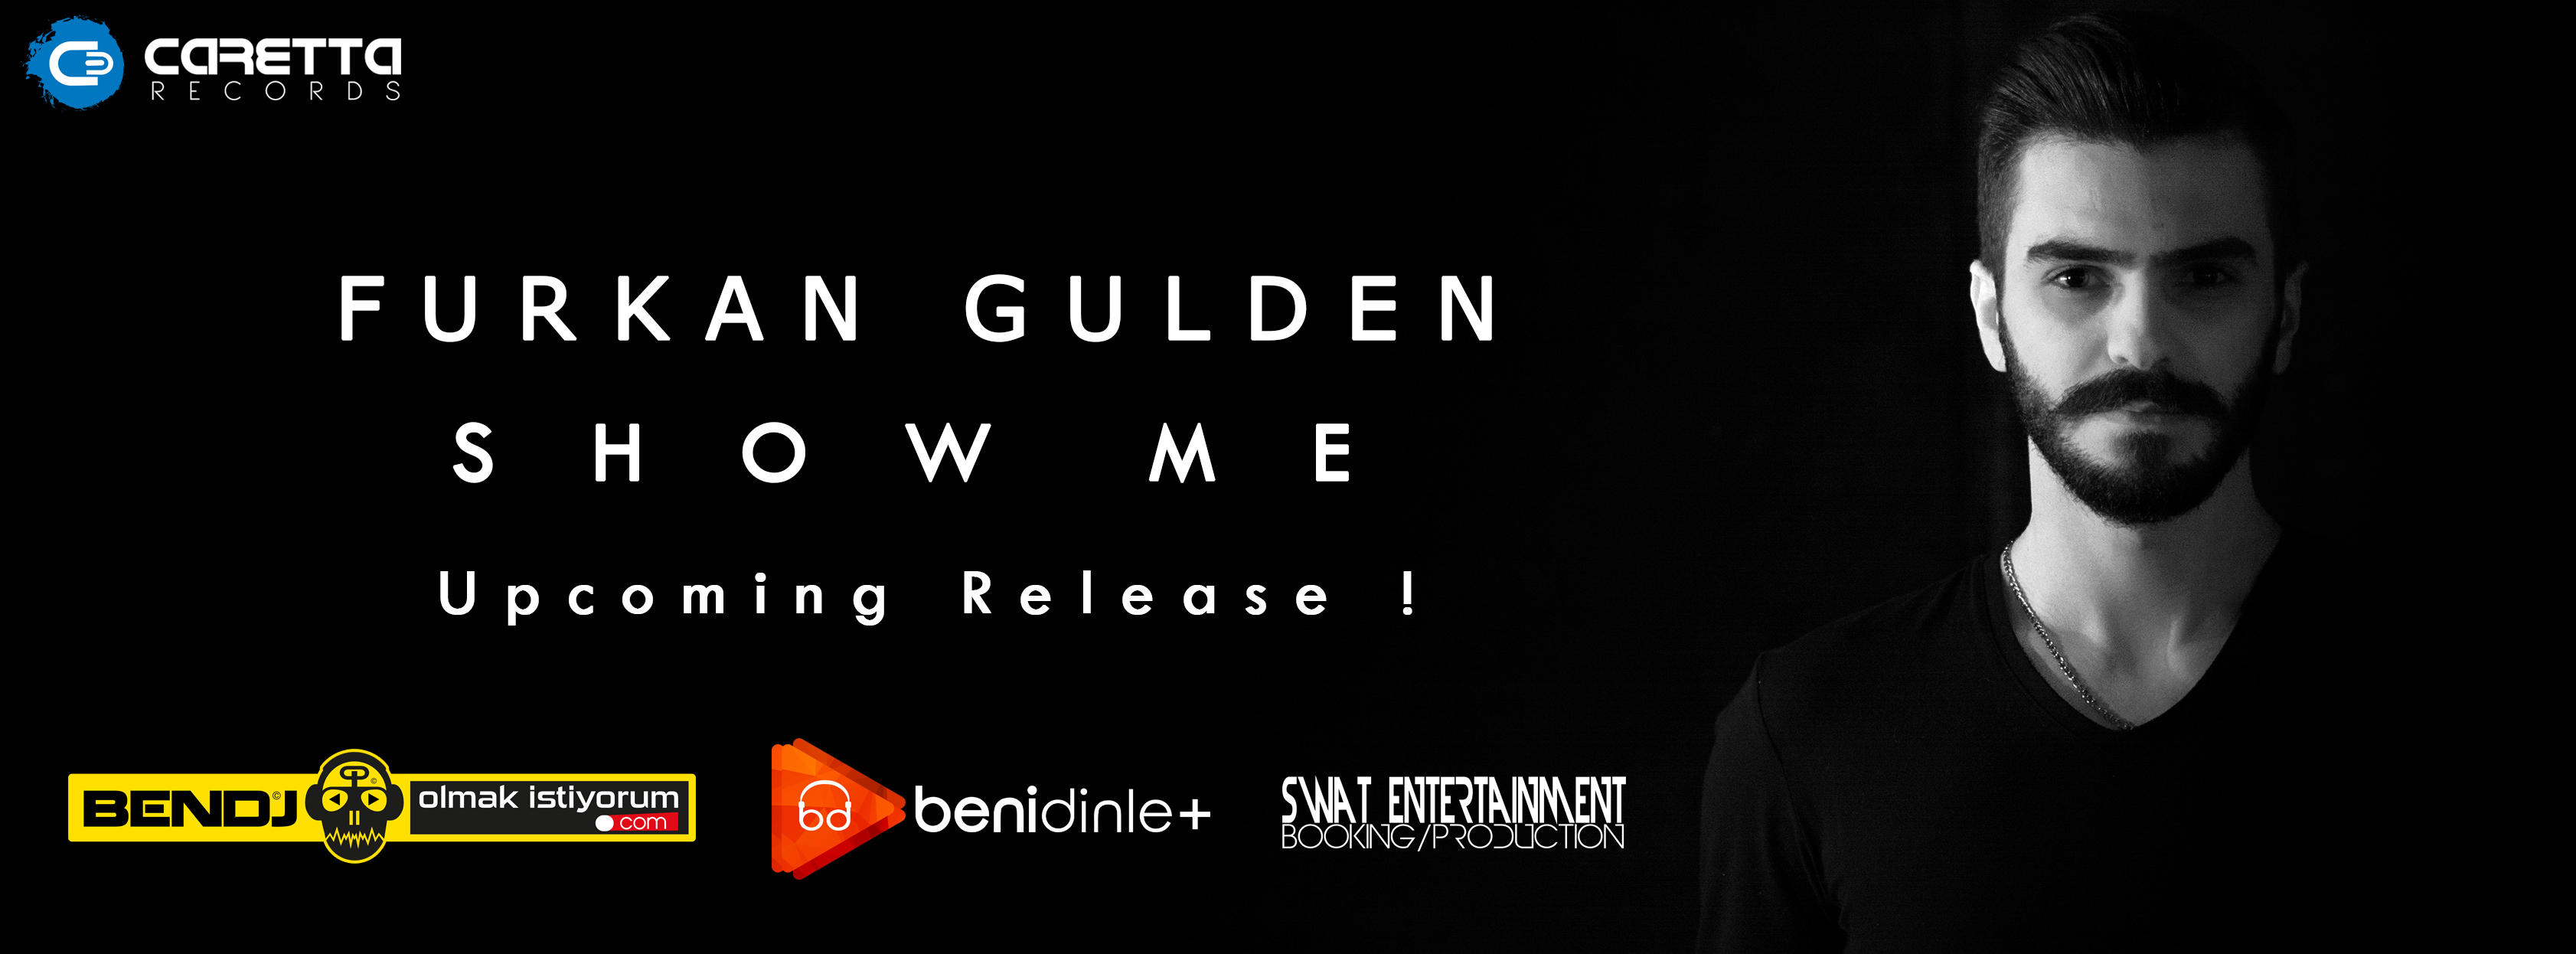 Furkan Gulden Show Me albüm çalışması !